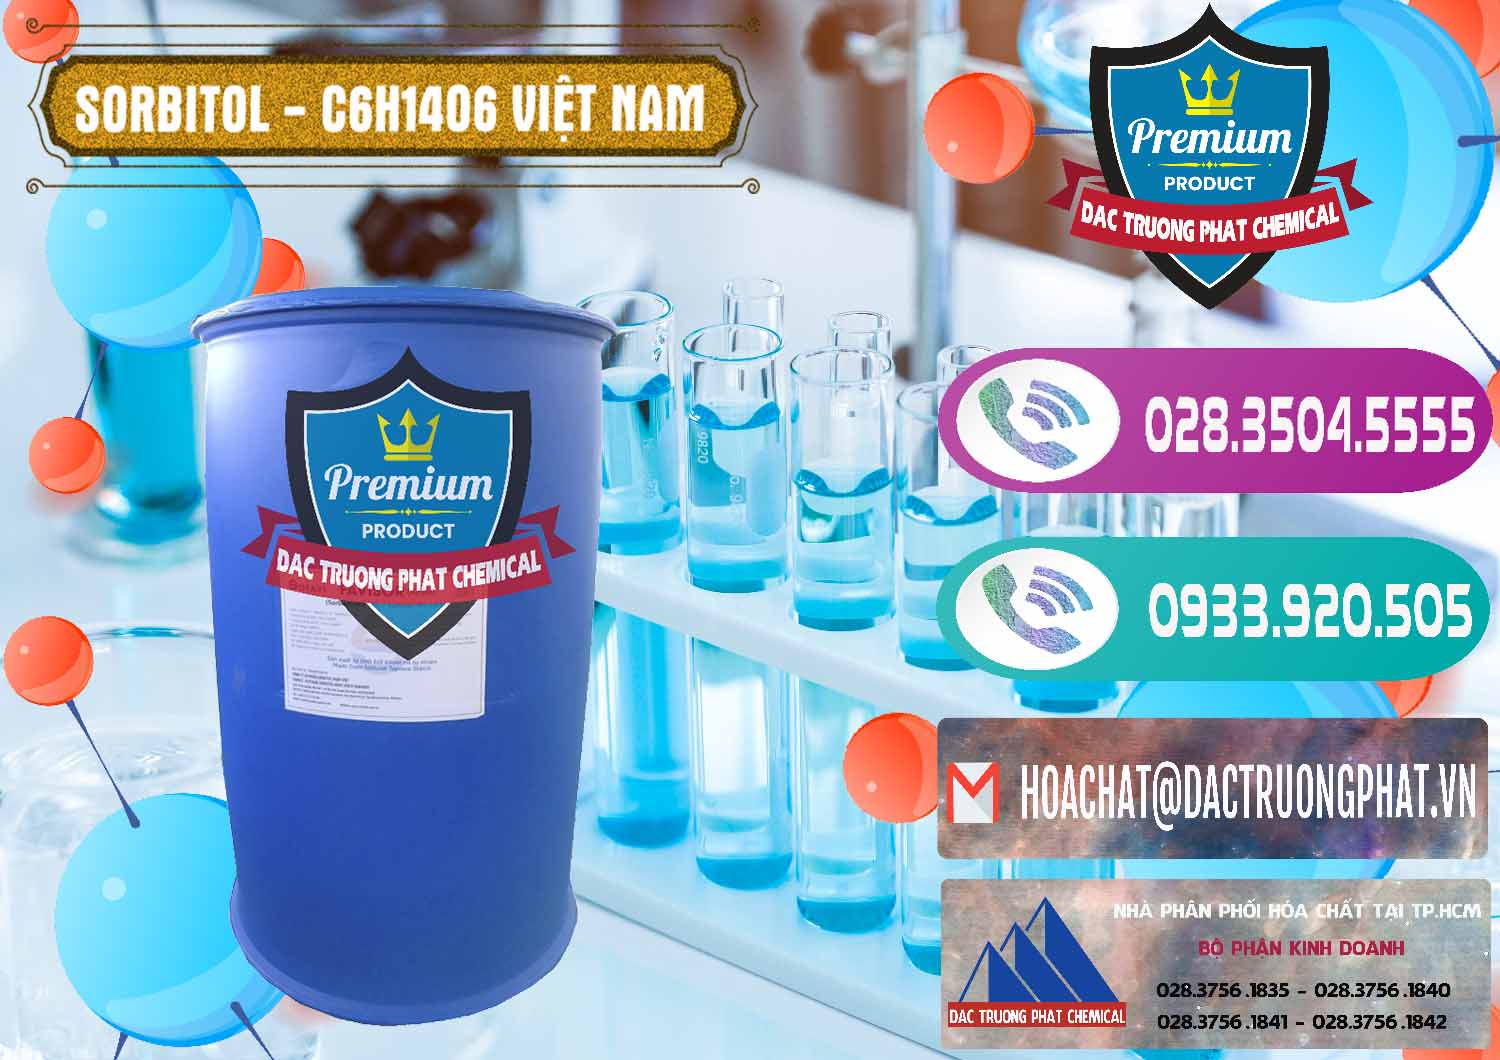 Cty chuyên cung ứng ( phân phối ) Sorbitol - C6H14O6 Lỏng 70% Food Grade Việt Nam - 0438 - Nơi chuyên phân phối & bán hóa chất tại TP.HCM - hoachatxulynuoc.com